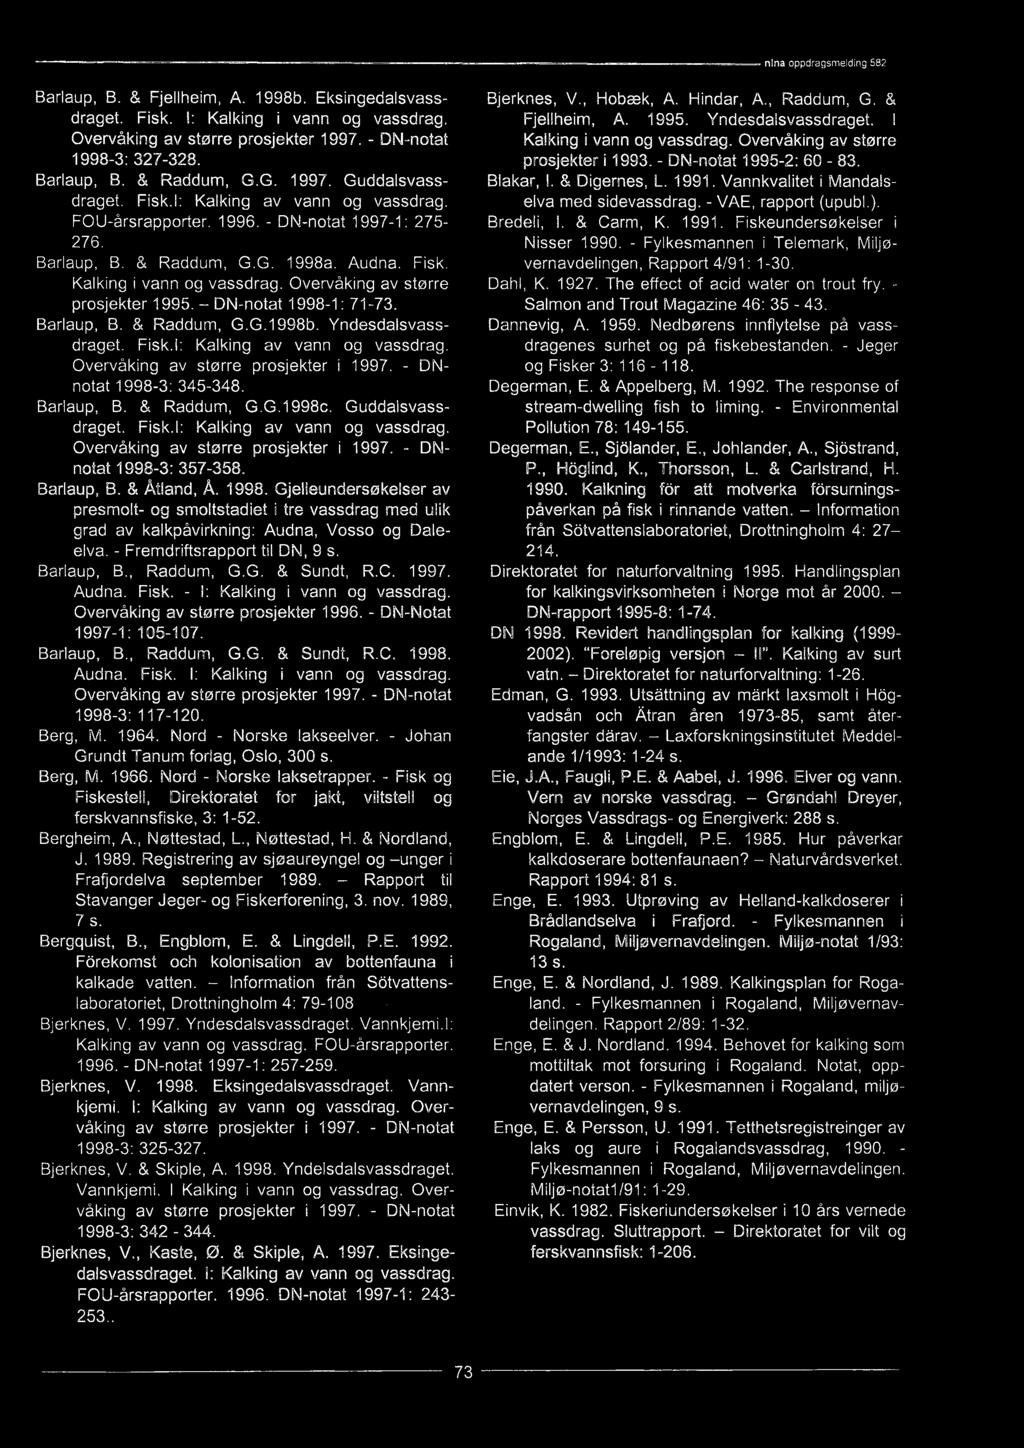 1998. Gjelleundersøkelser av presmolt- og smoltstadiet i tre vassdrag med ulik grad av kalkpåvirkning: Audna, Vosso og Daleelva. - Fremdriftsrapport til DN, 9 s. Barlaup, B., Raddum, G.G. & Sundt, R.